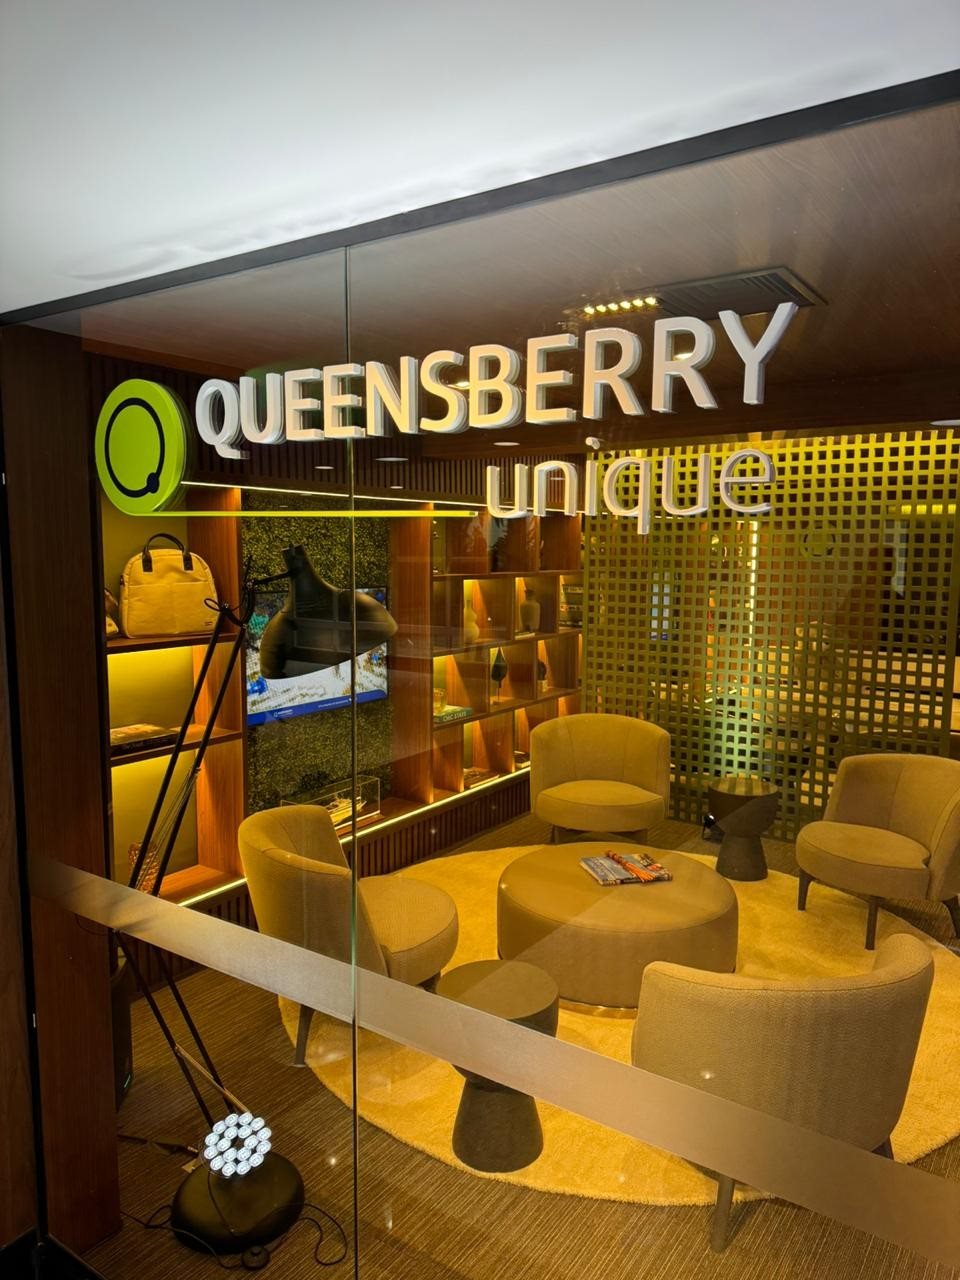 Queensberry Unique fica localizada no prédio da BeFly em São Paulo